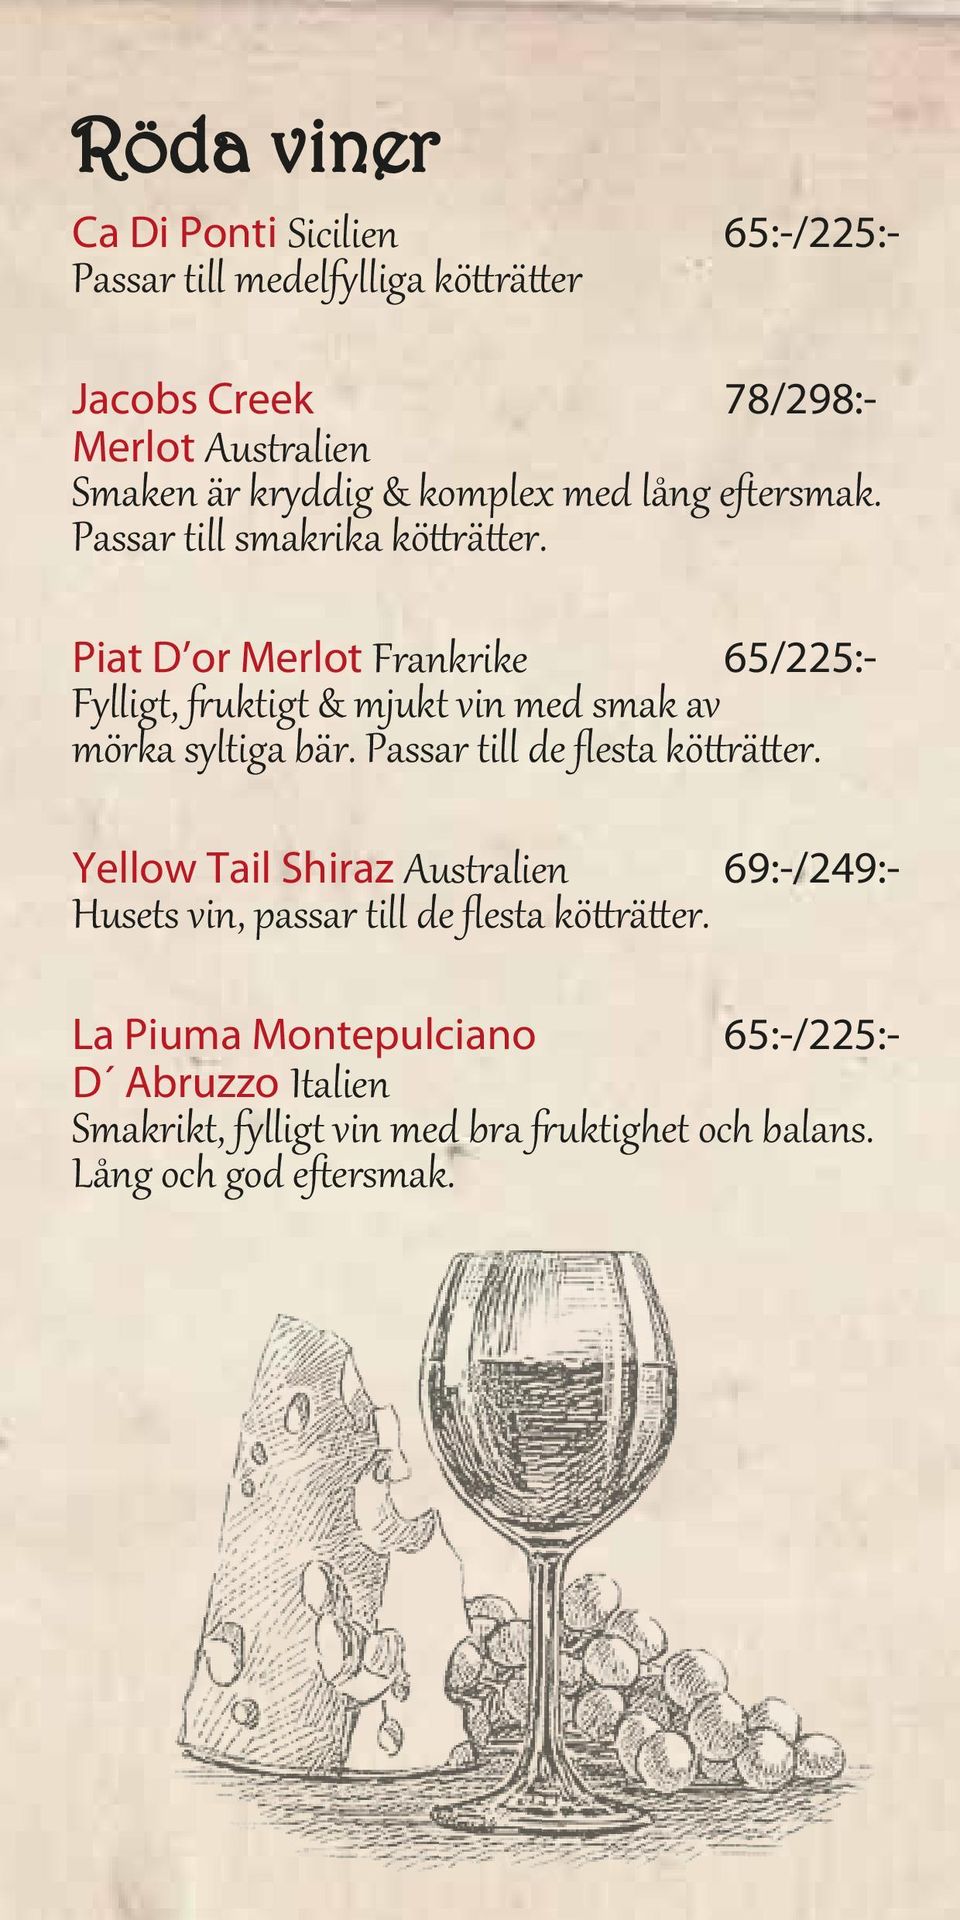 Piat D or Merlot Frankrike 65/225:- Fylligt, fruktigt & mjukt vin med smak av mörka syltiga bär. Passar till de flesta kötträtter.